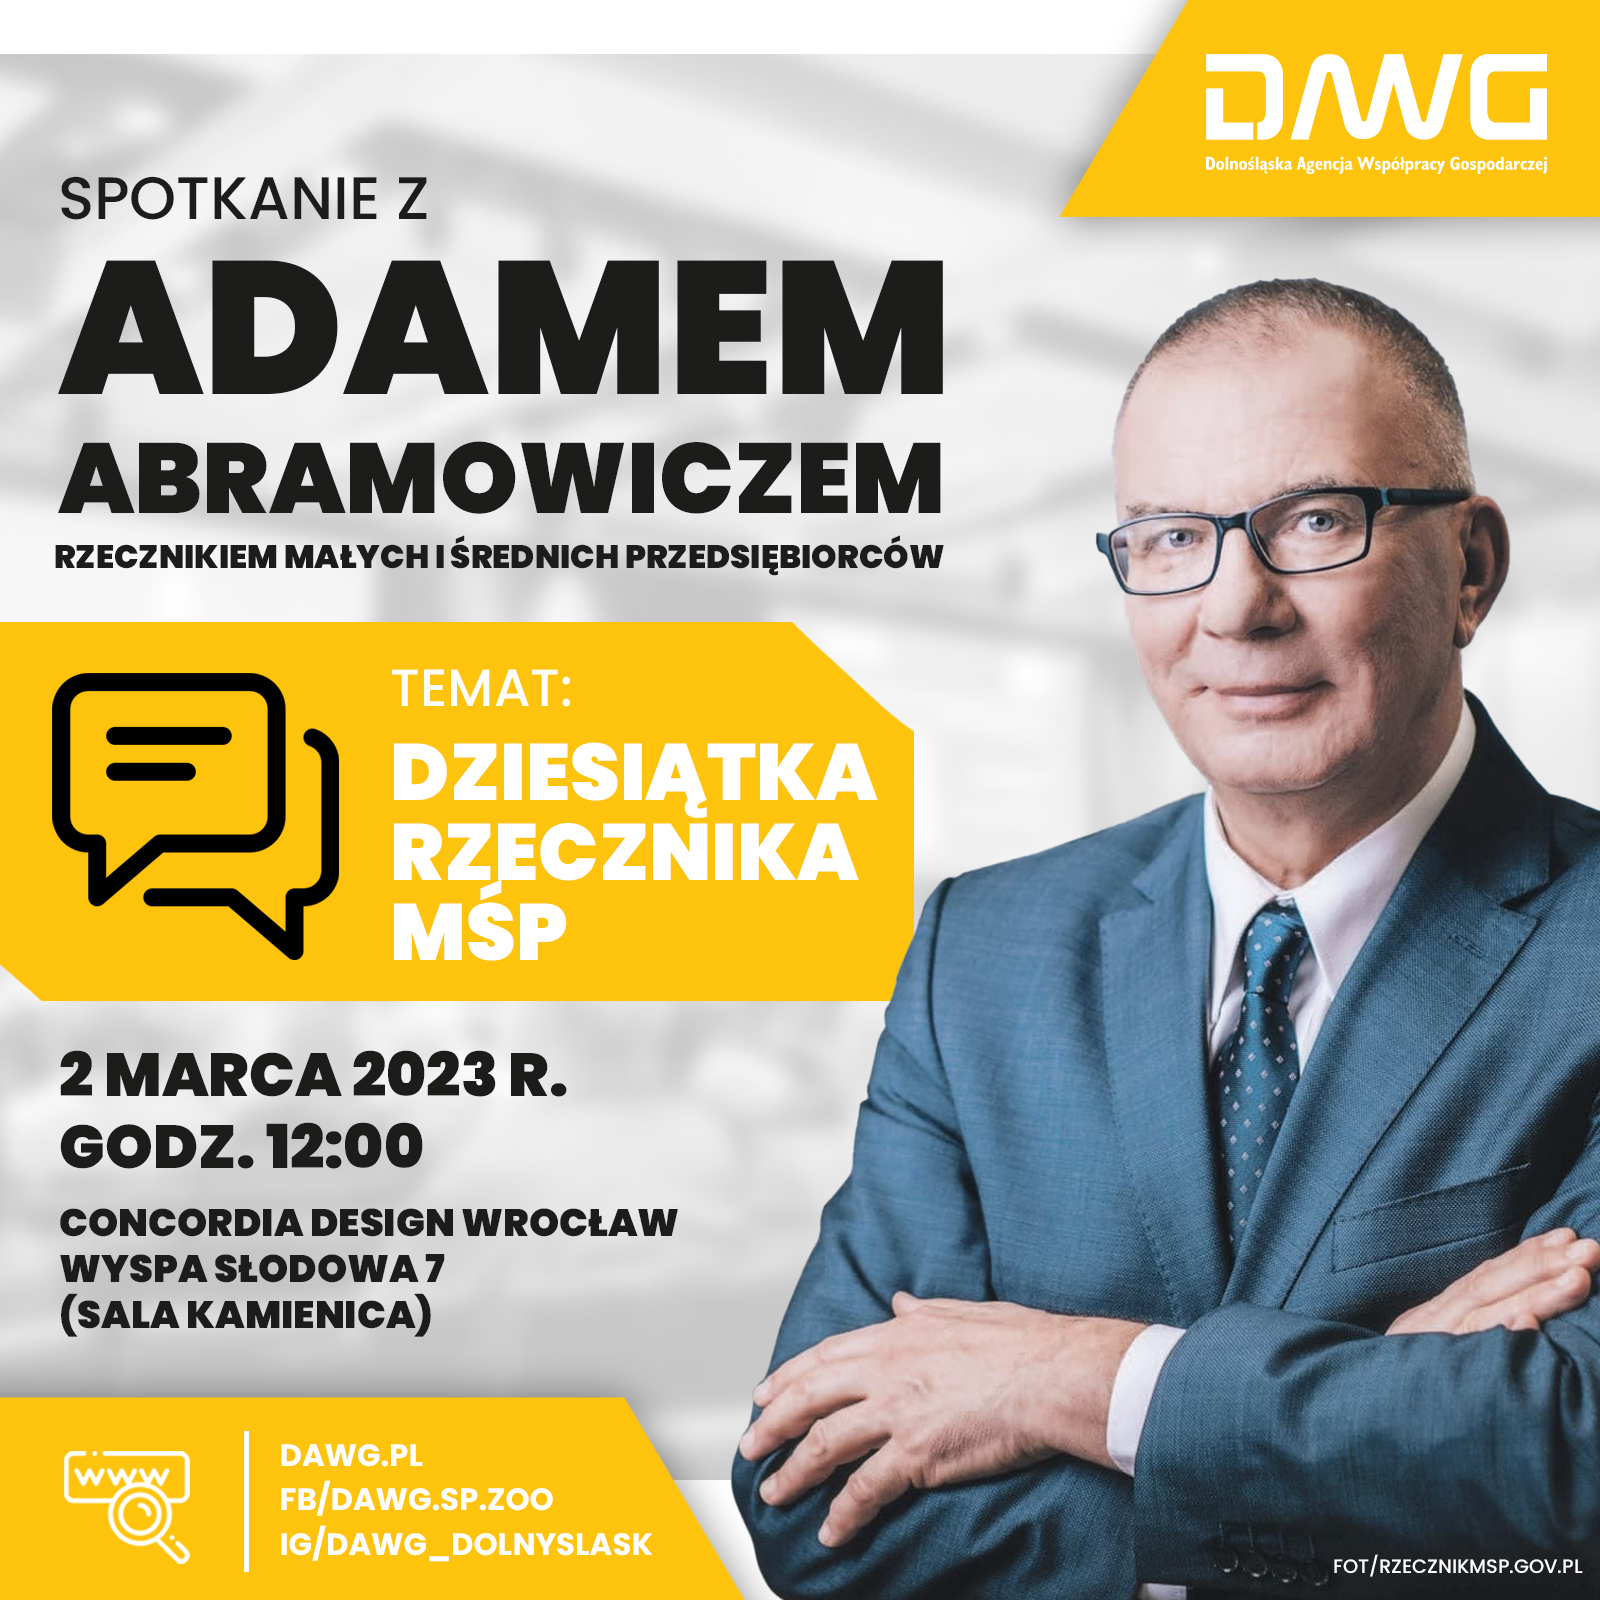 Już w czwartek we Wrocławiu spotkanie z Rzecznikiem MŚP